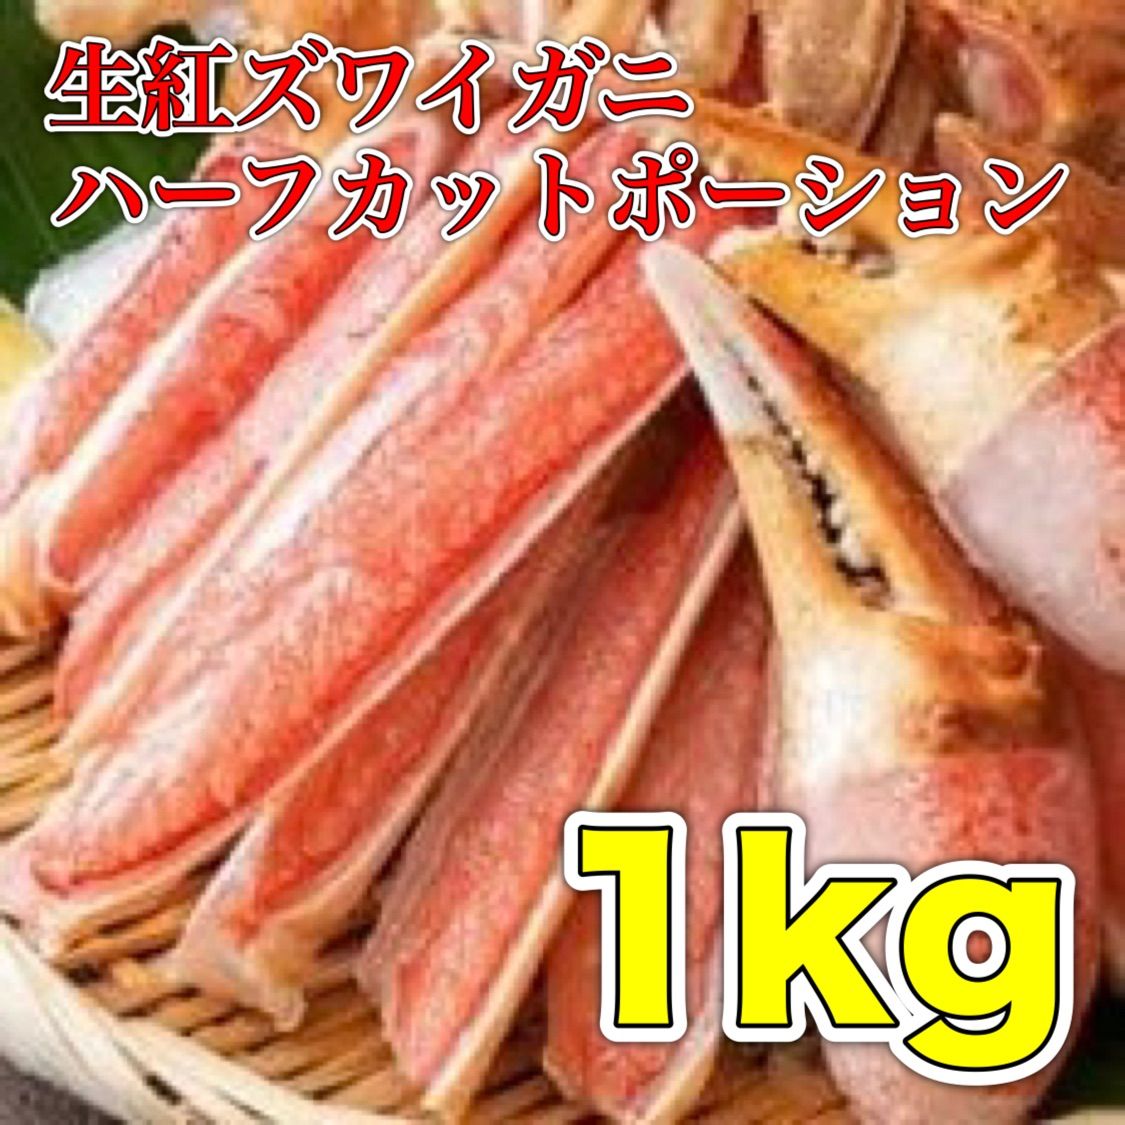 生食用 冷凍生紅ズワイガニハーフカットポーション1kg-0